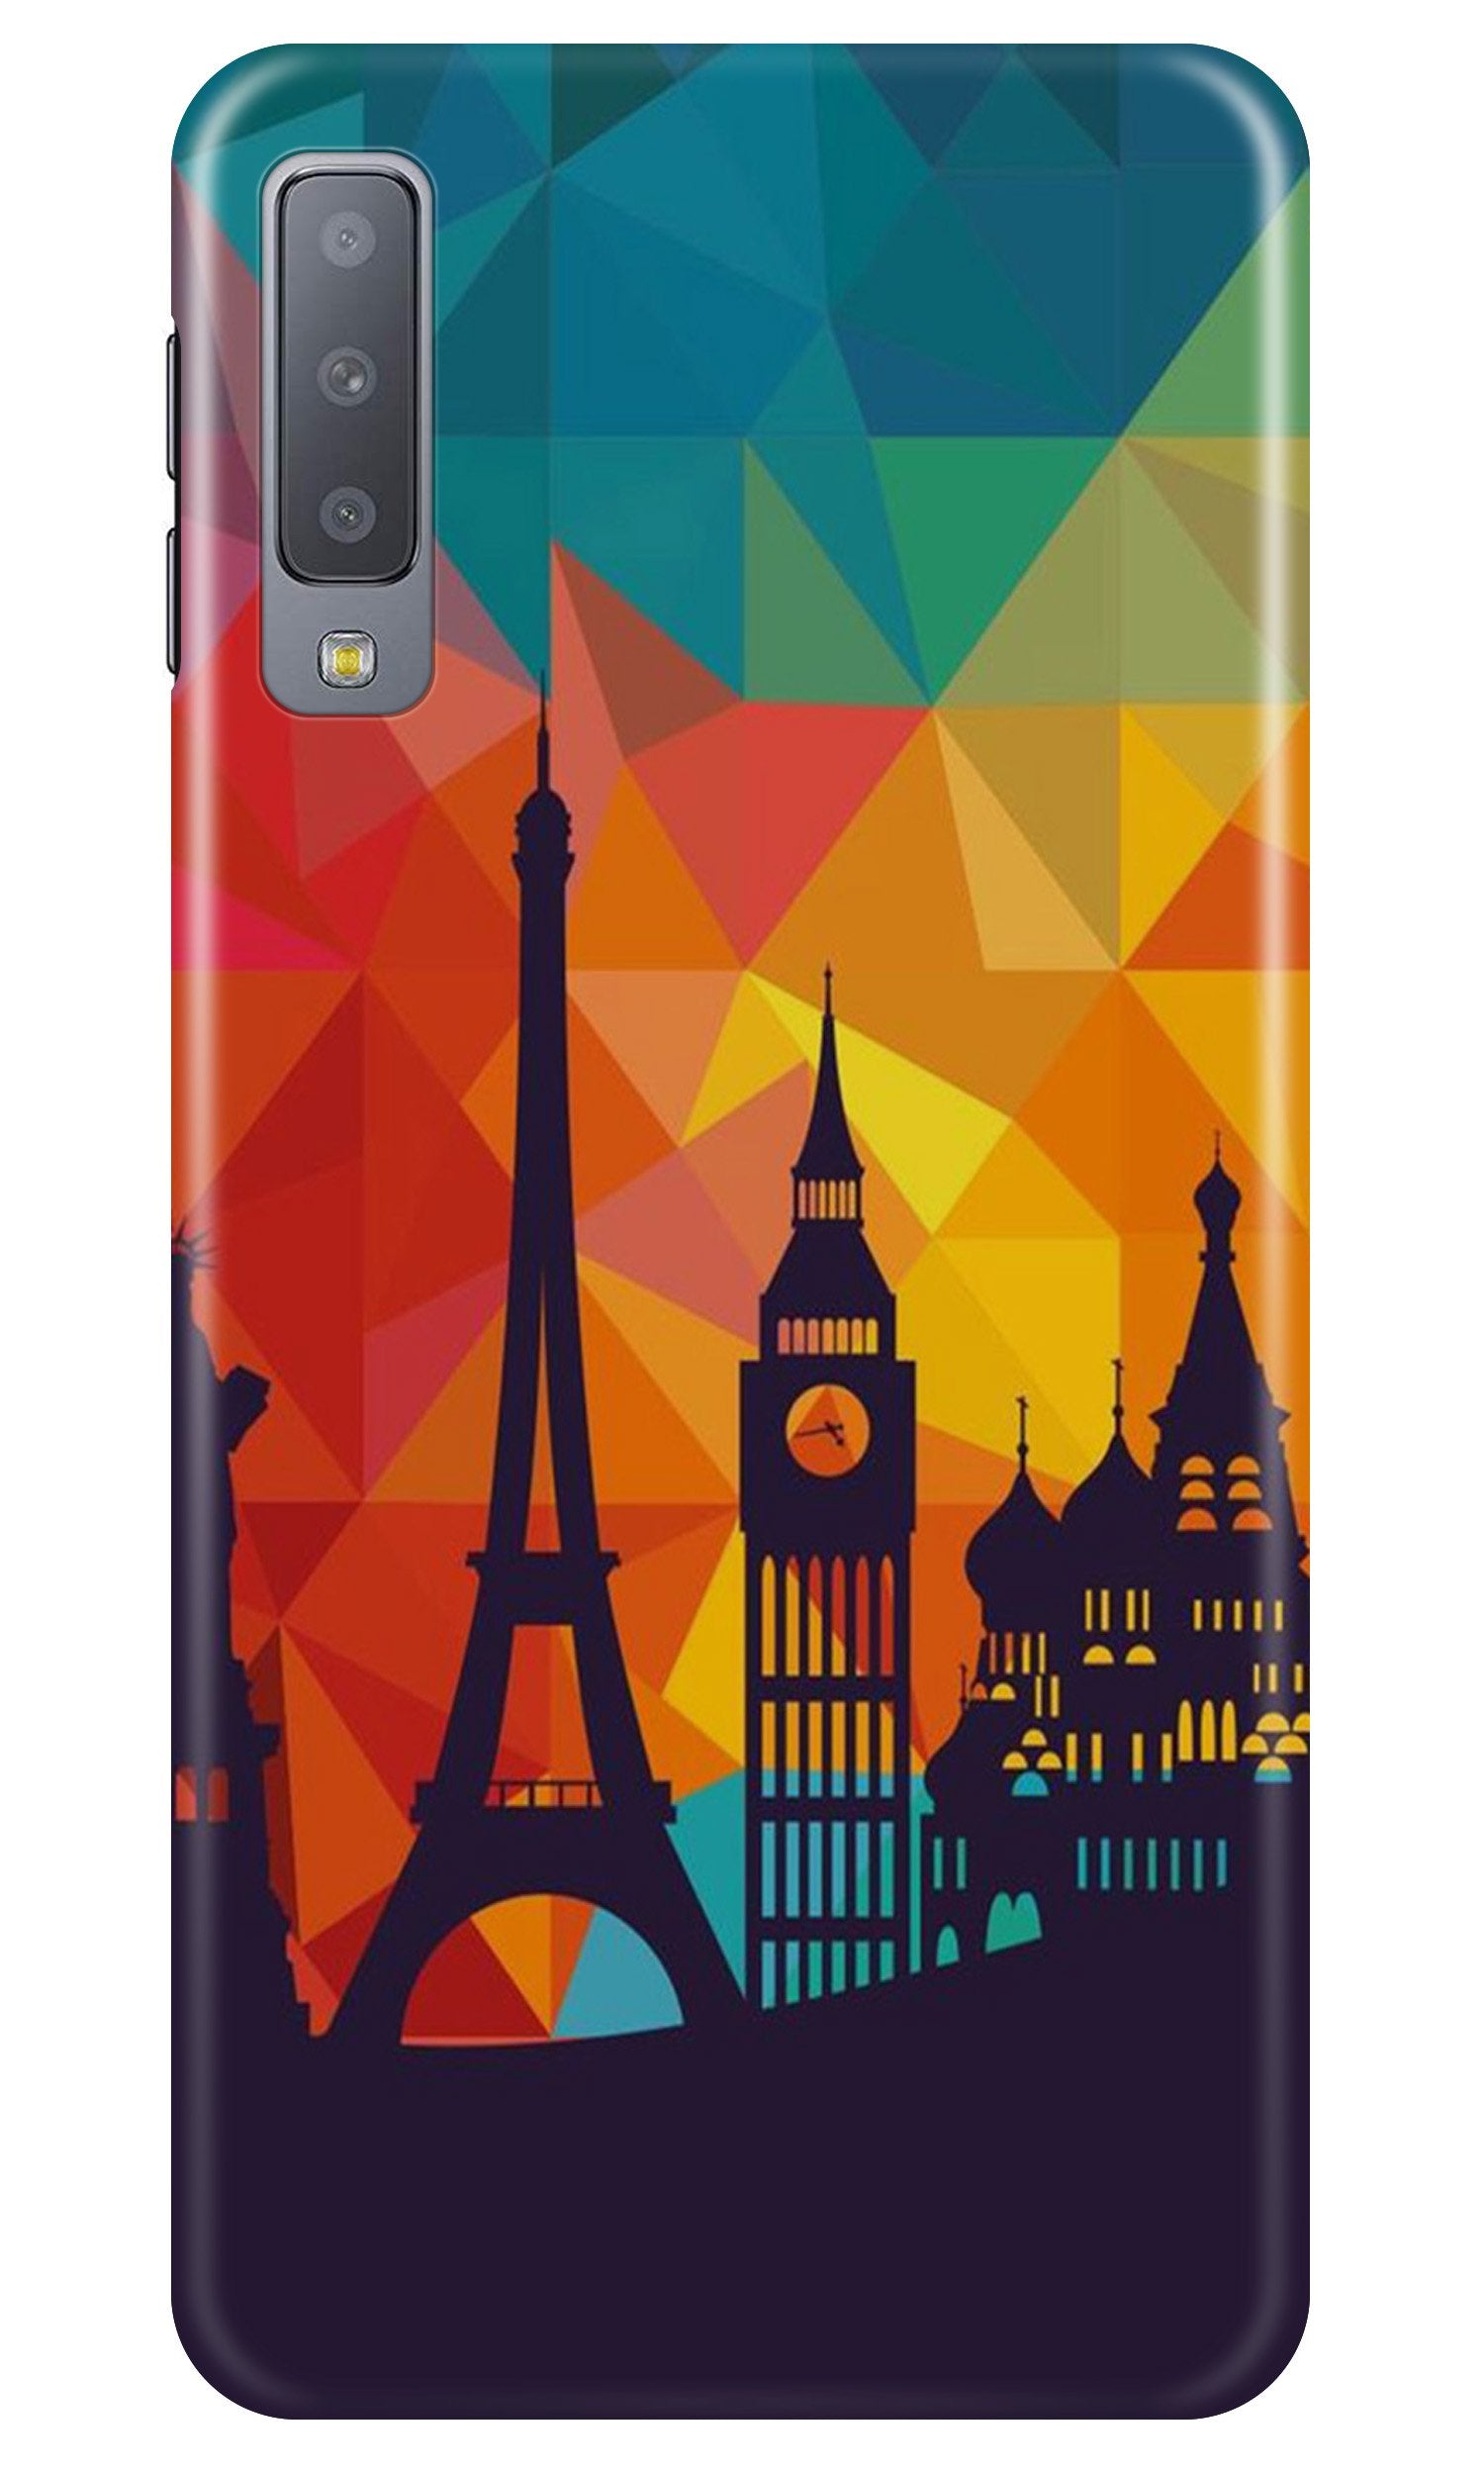 Eiffel Tower2 Case for Samsung Galaxy A70